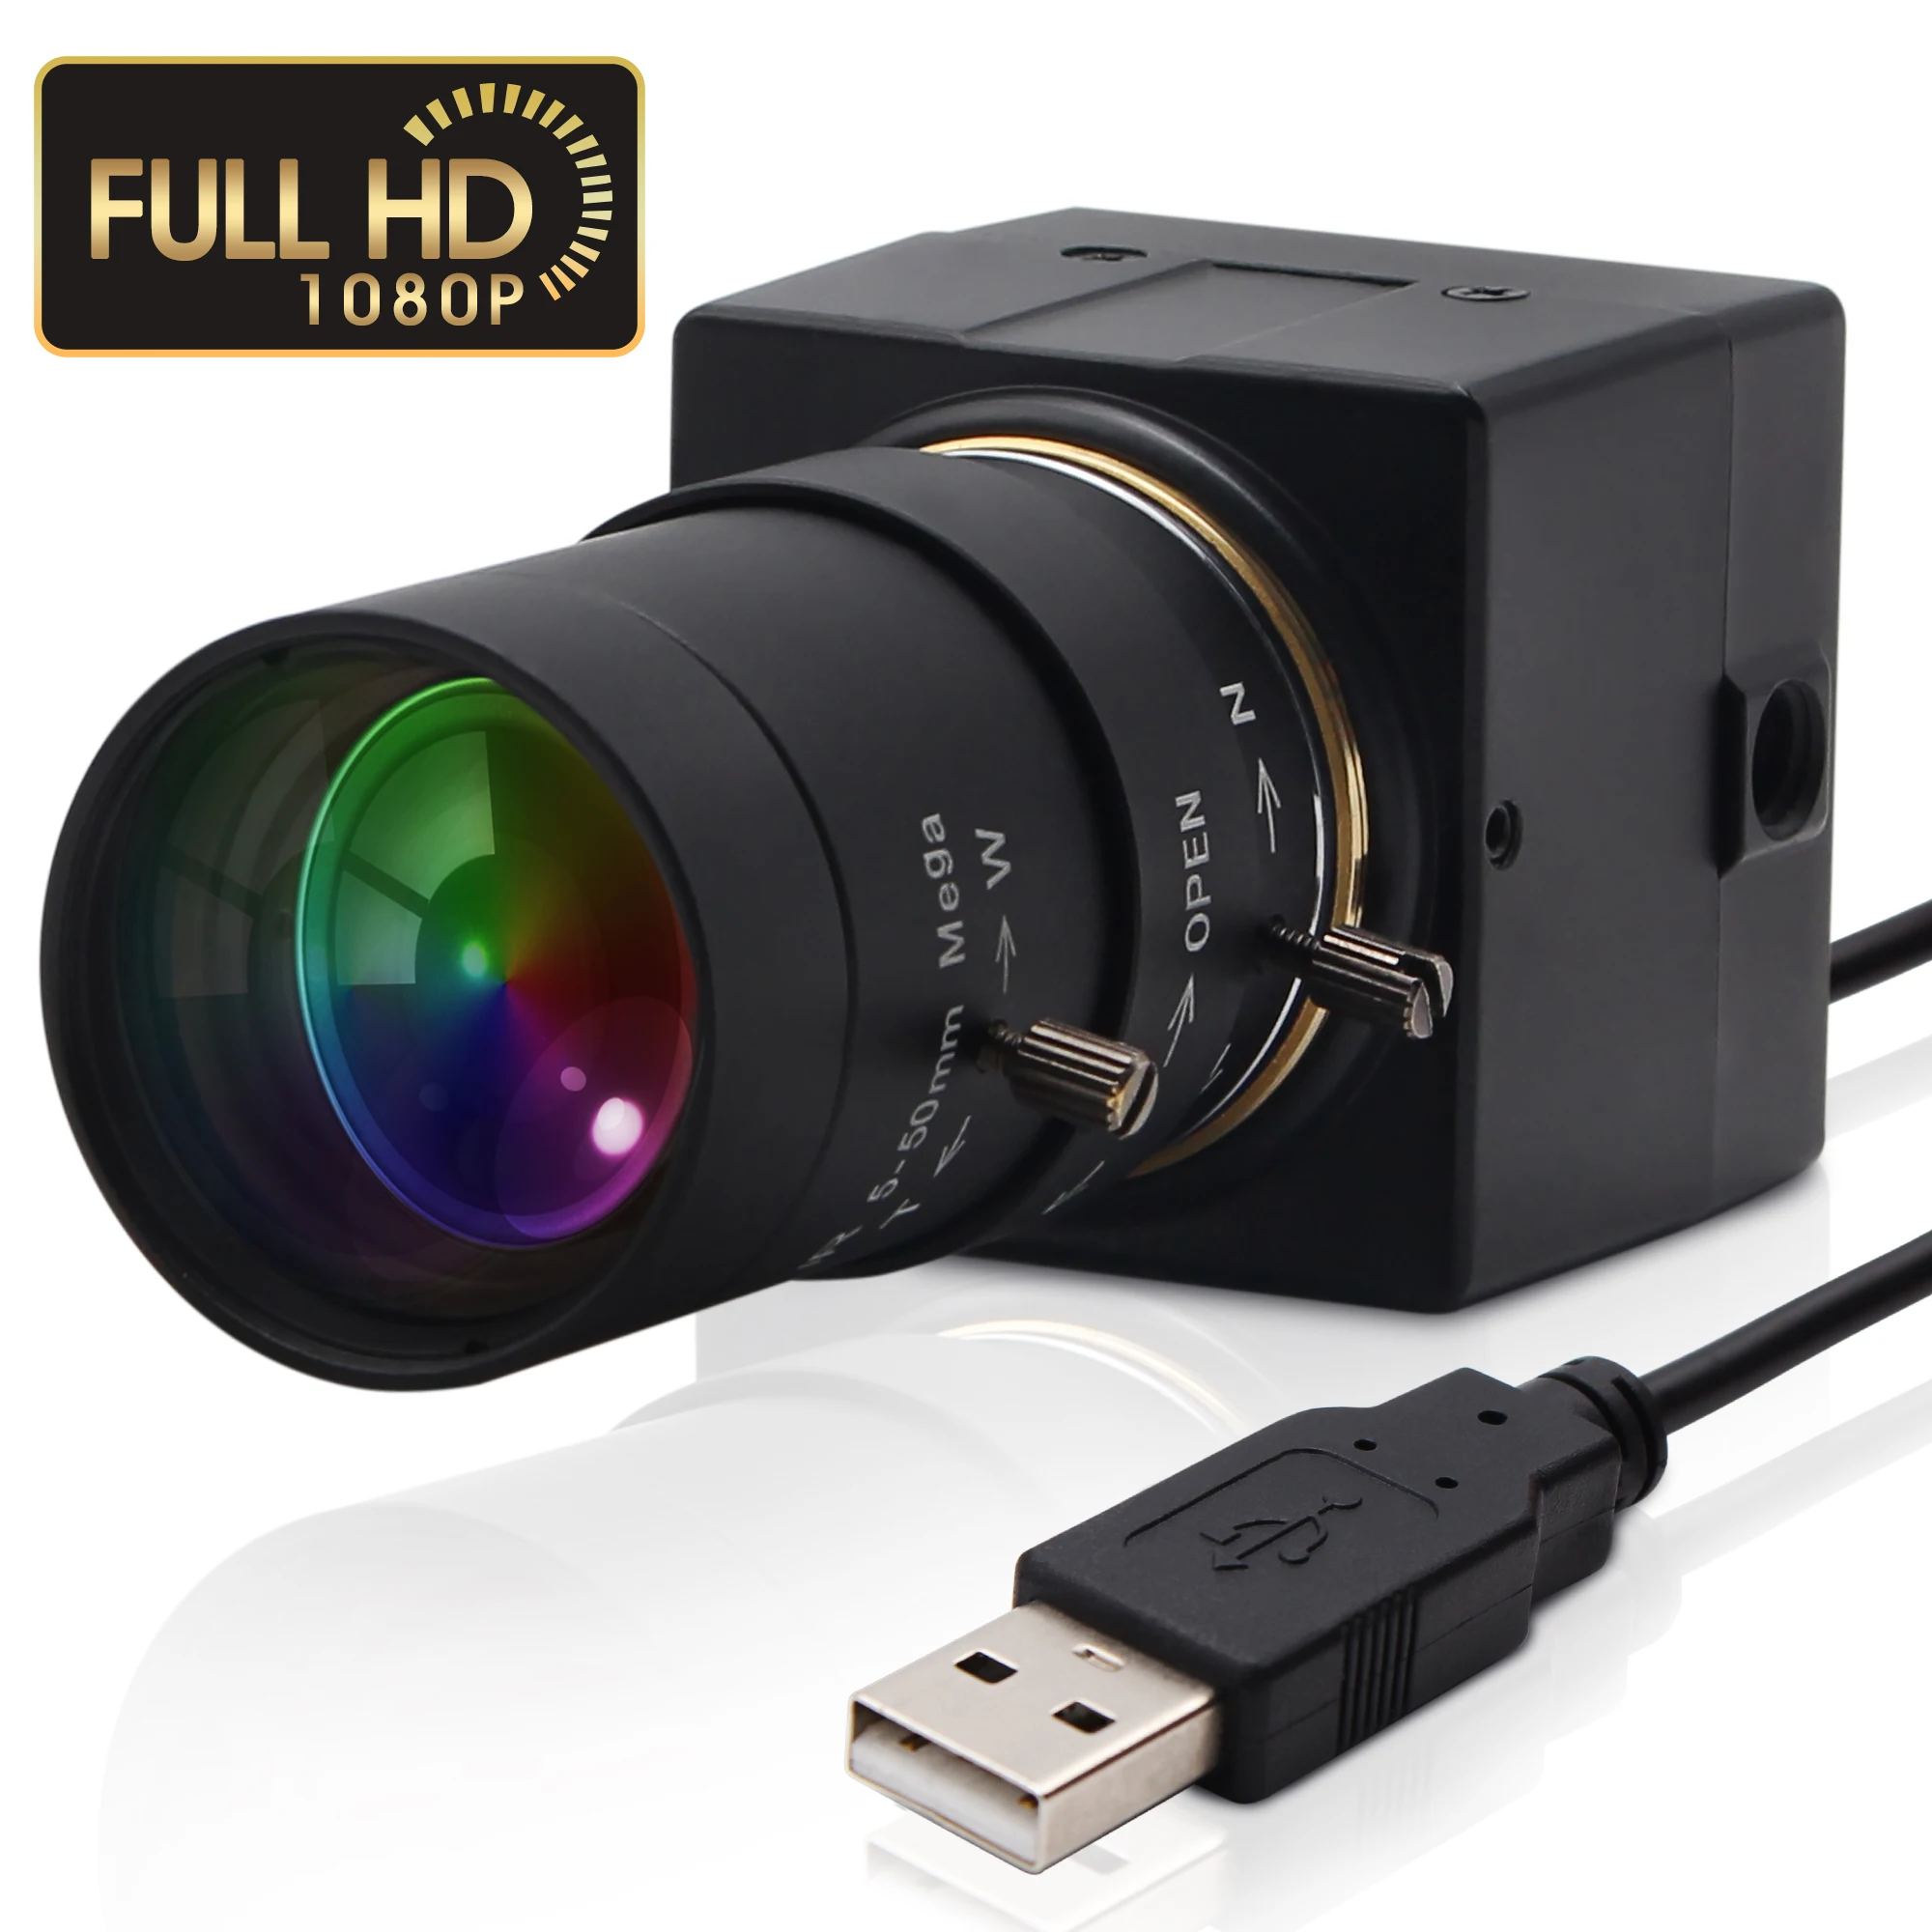 

2022 Full Hd 1080P USB веб-камера 5-50 мм варифокальная CMOS OV2710 30fps 60fps 100fps промышленная Usb камера UVC для ПК компьютера ноутбука